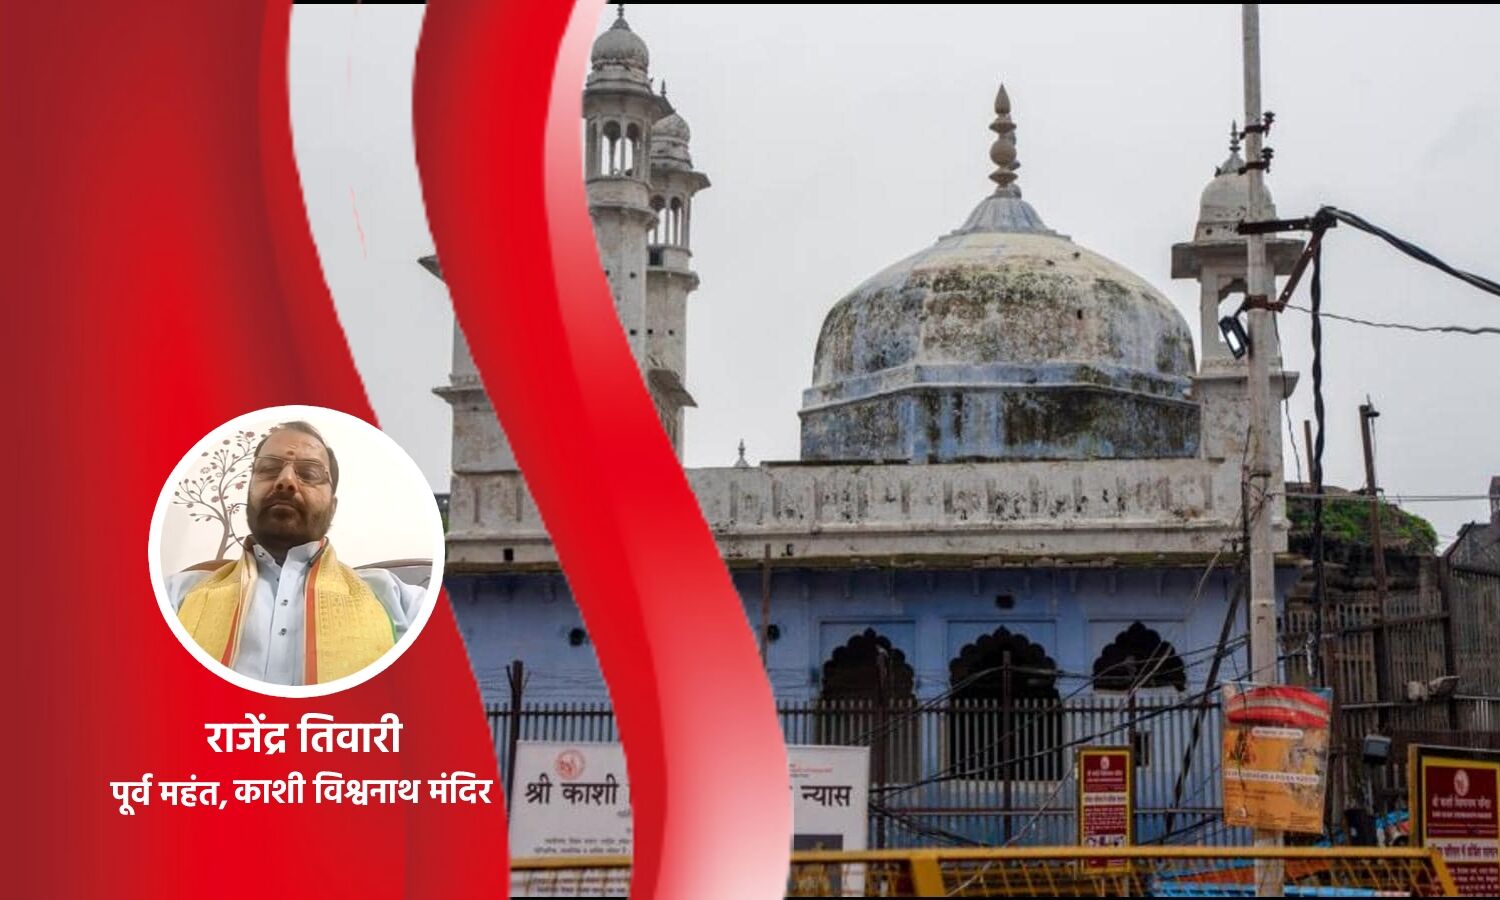 Gyanvapi Masjid Row : विश्वनाथ मंदिर के पूर्व महंत का ज्ञानवापी सर्वे पर बड़ा खुलासा, बोले- हंगामा करने वालों की मंशा साफ नहीं